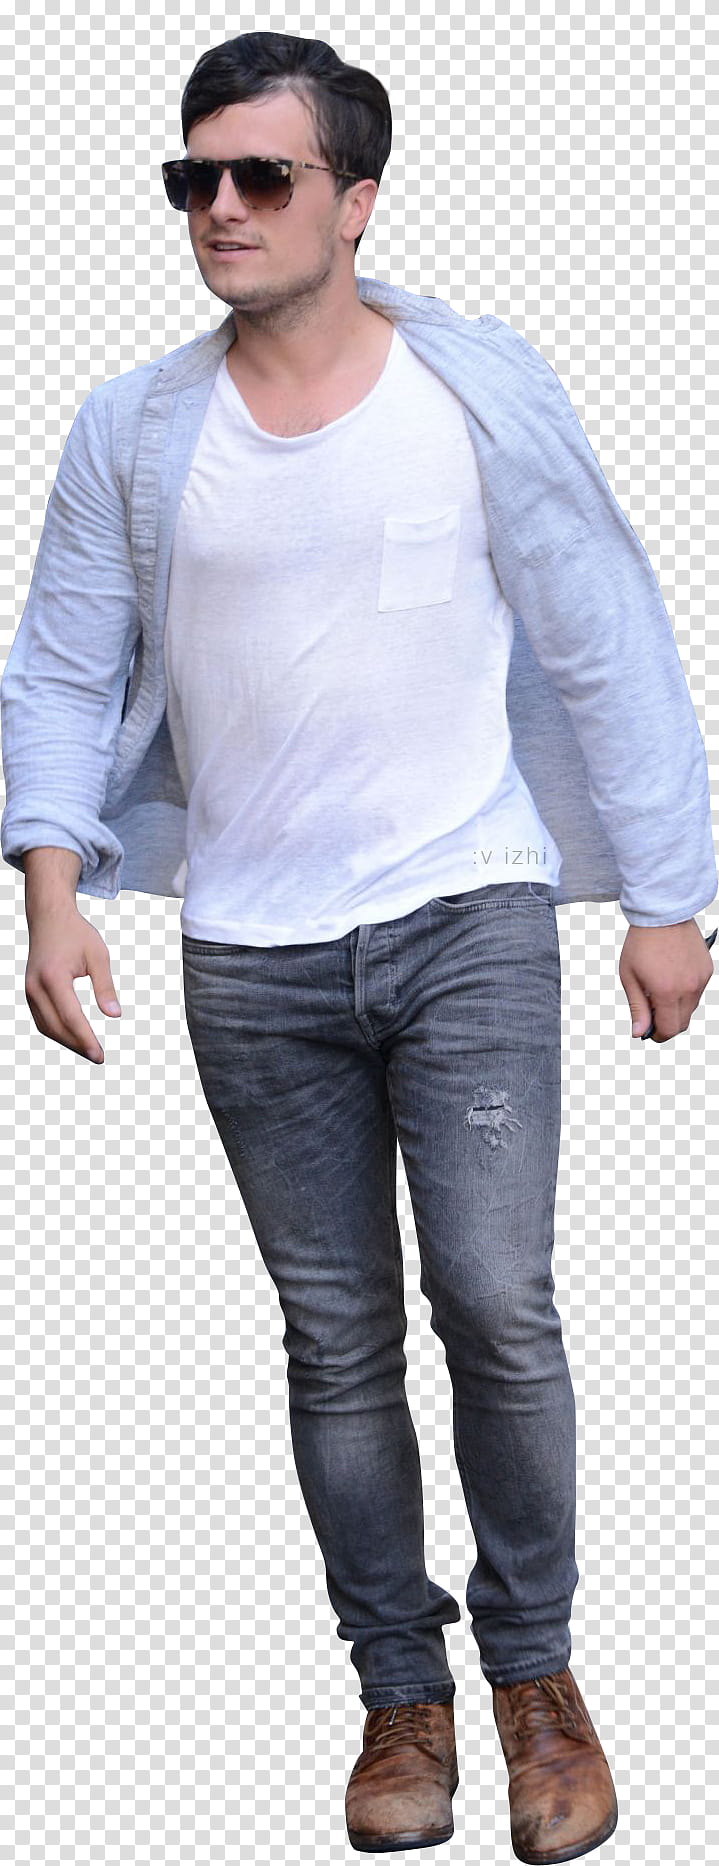 Josh Hutcherson transparent background PNG clipart